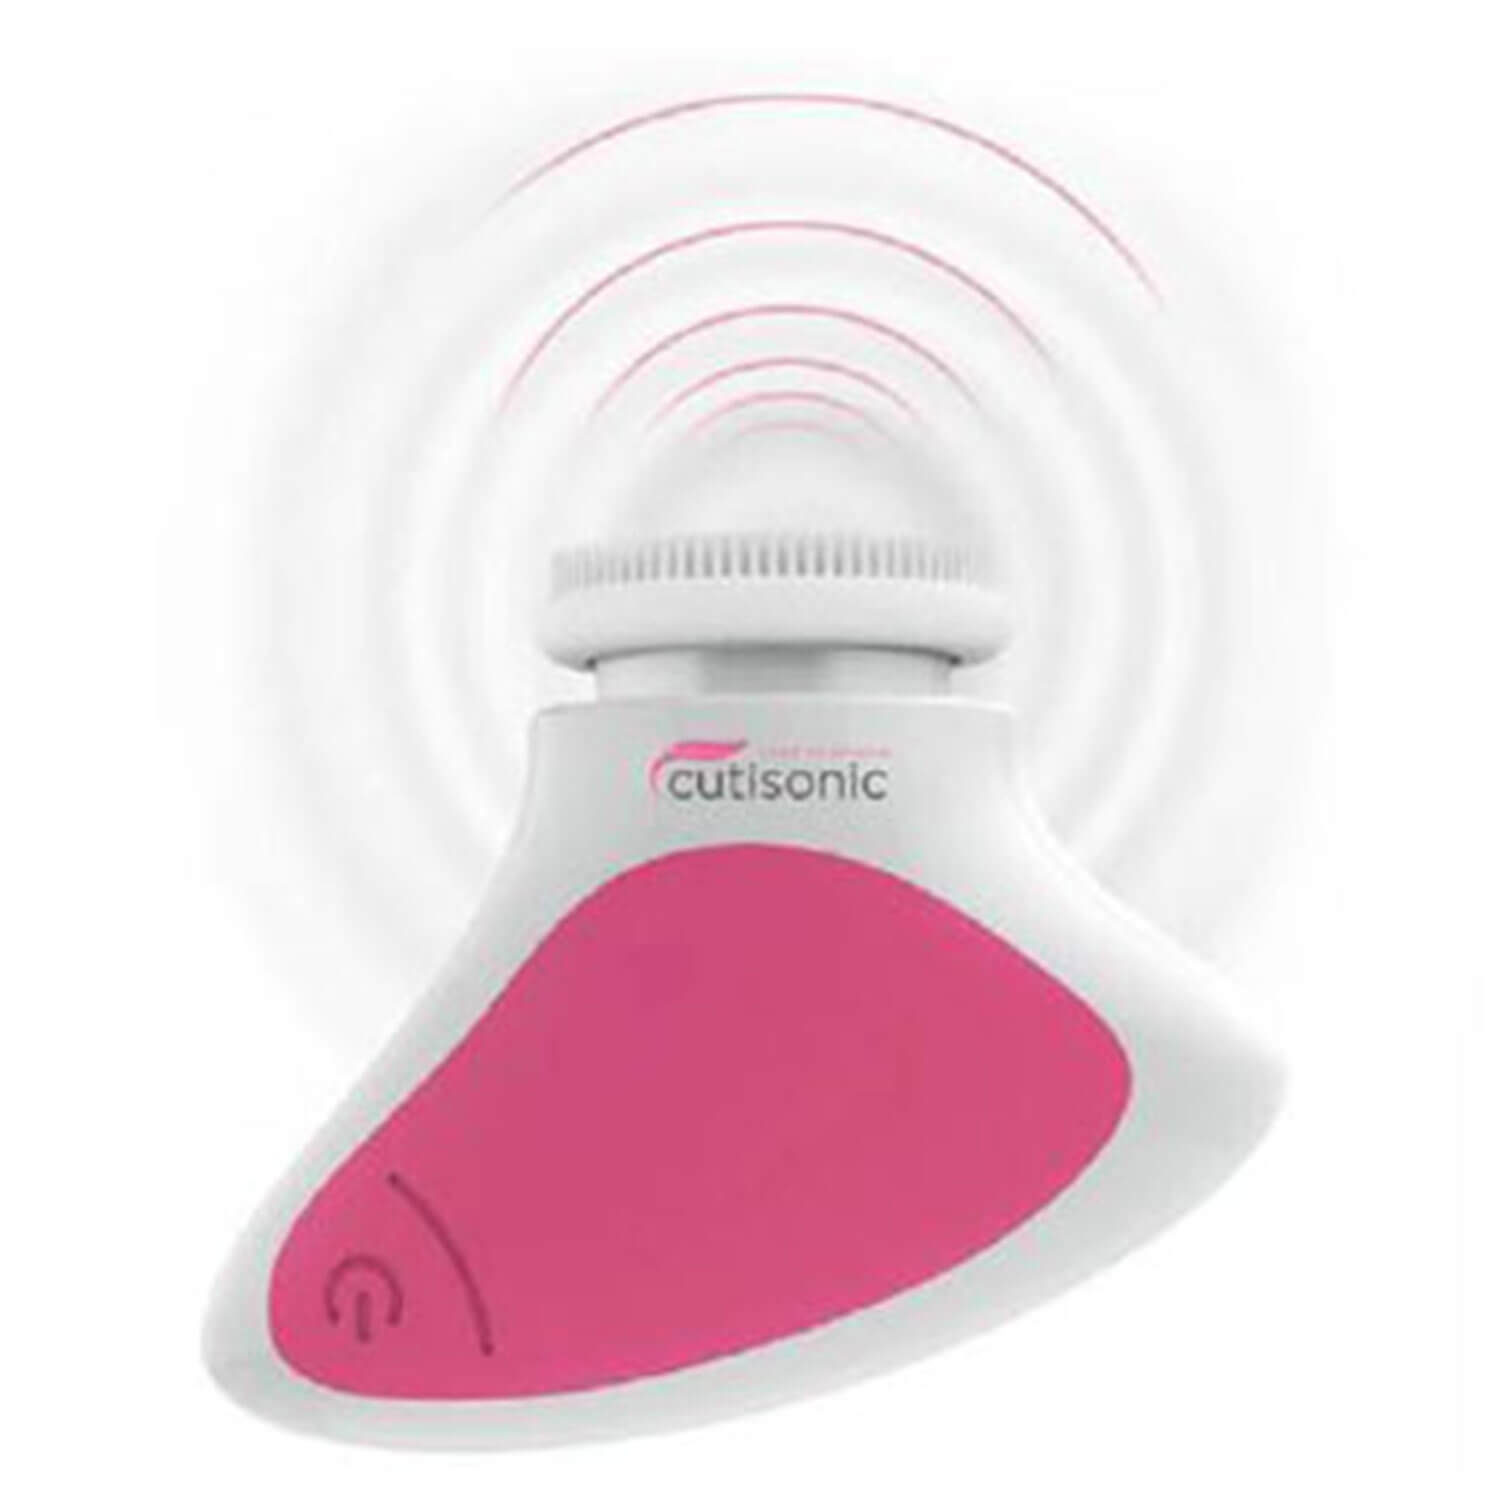 Produktbild von Cutisonic - Ultraschall-Gesichtpflegegerät Two